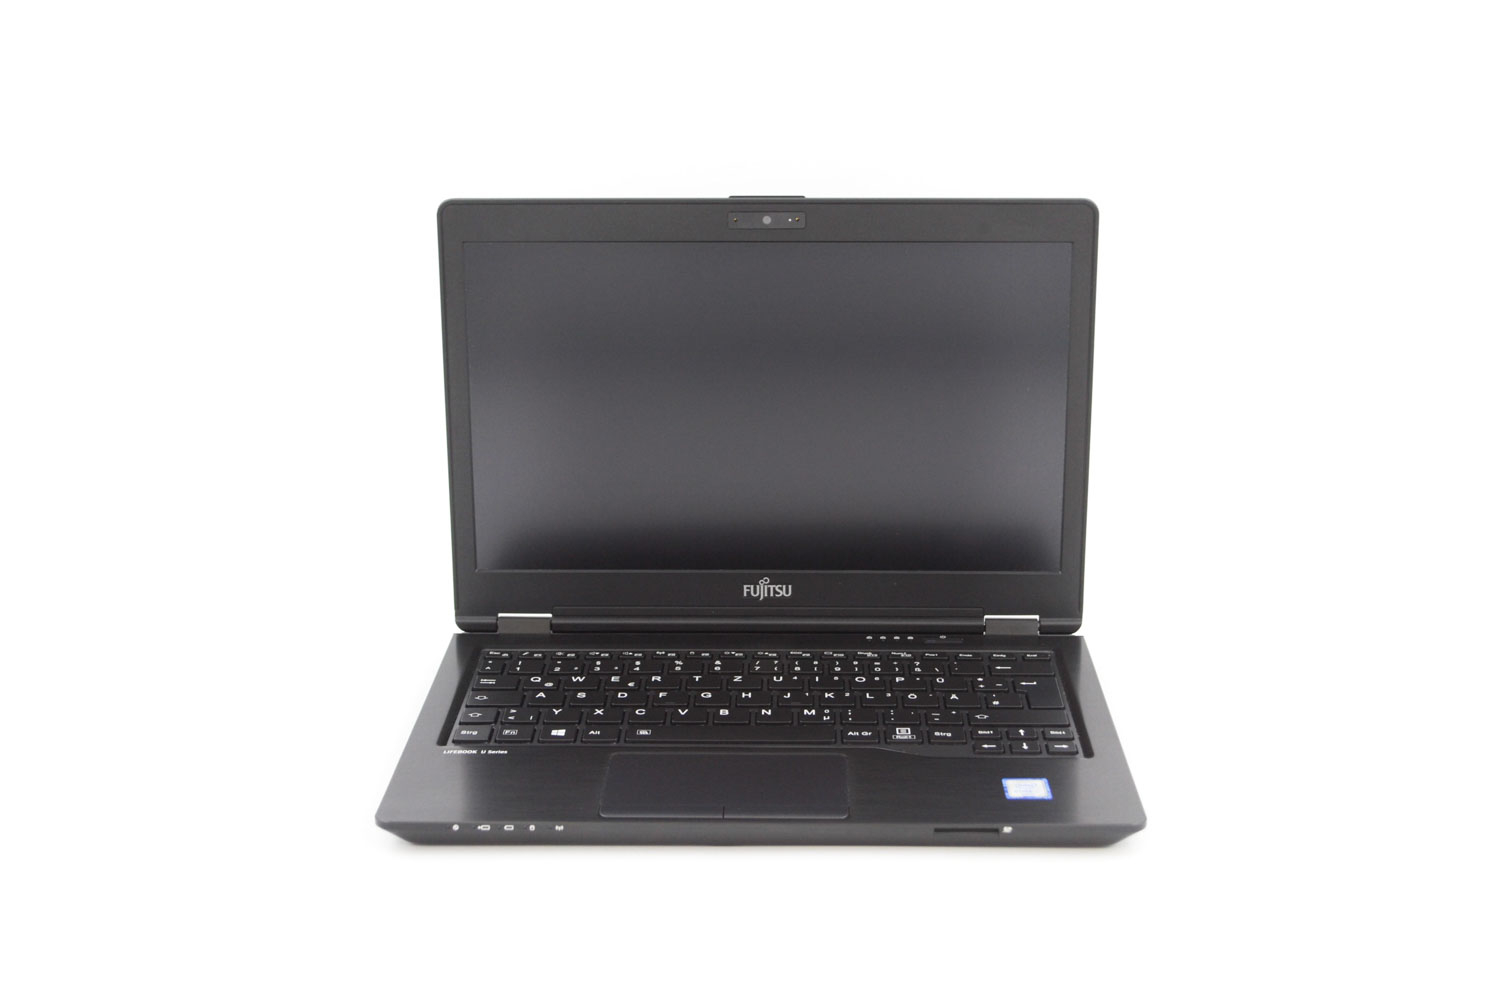 Fujitsu LifeBook U727 i5-6300U 8GB 256GB 12,5" FHD 4G/LTE QWERTZ-DE sehr gut